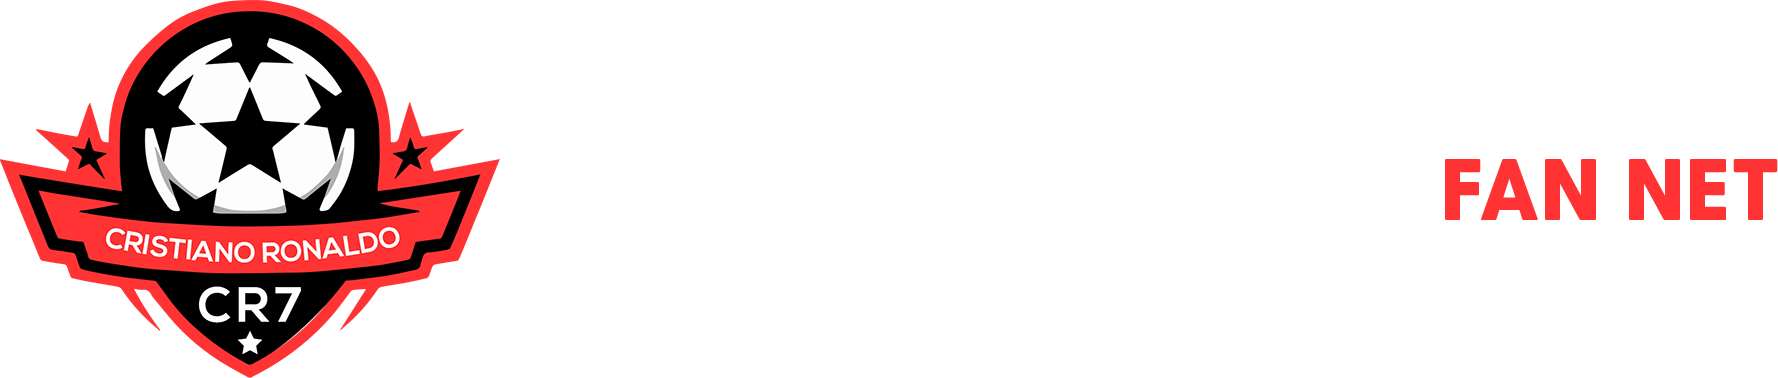 Cristiano Ronaldo Fan | News, Photos, Blog, Pics, Videos